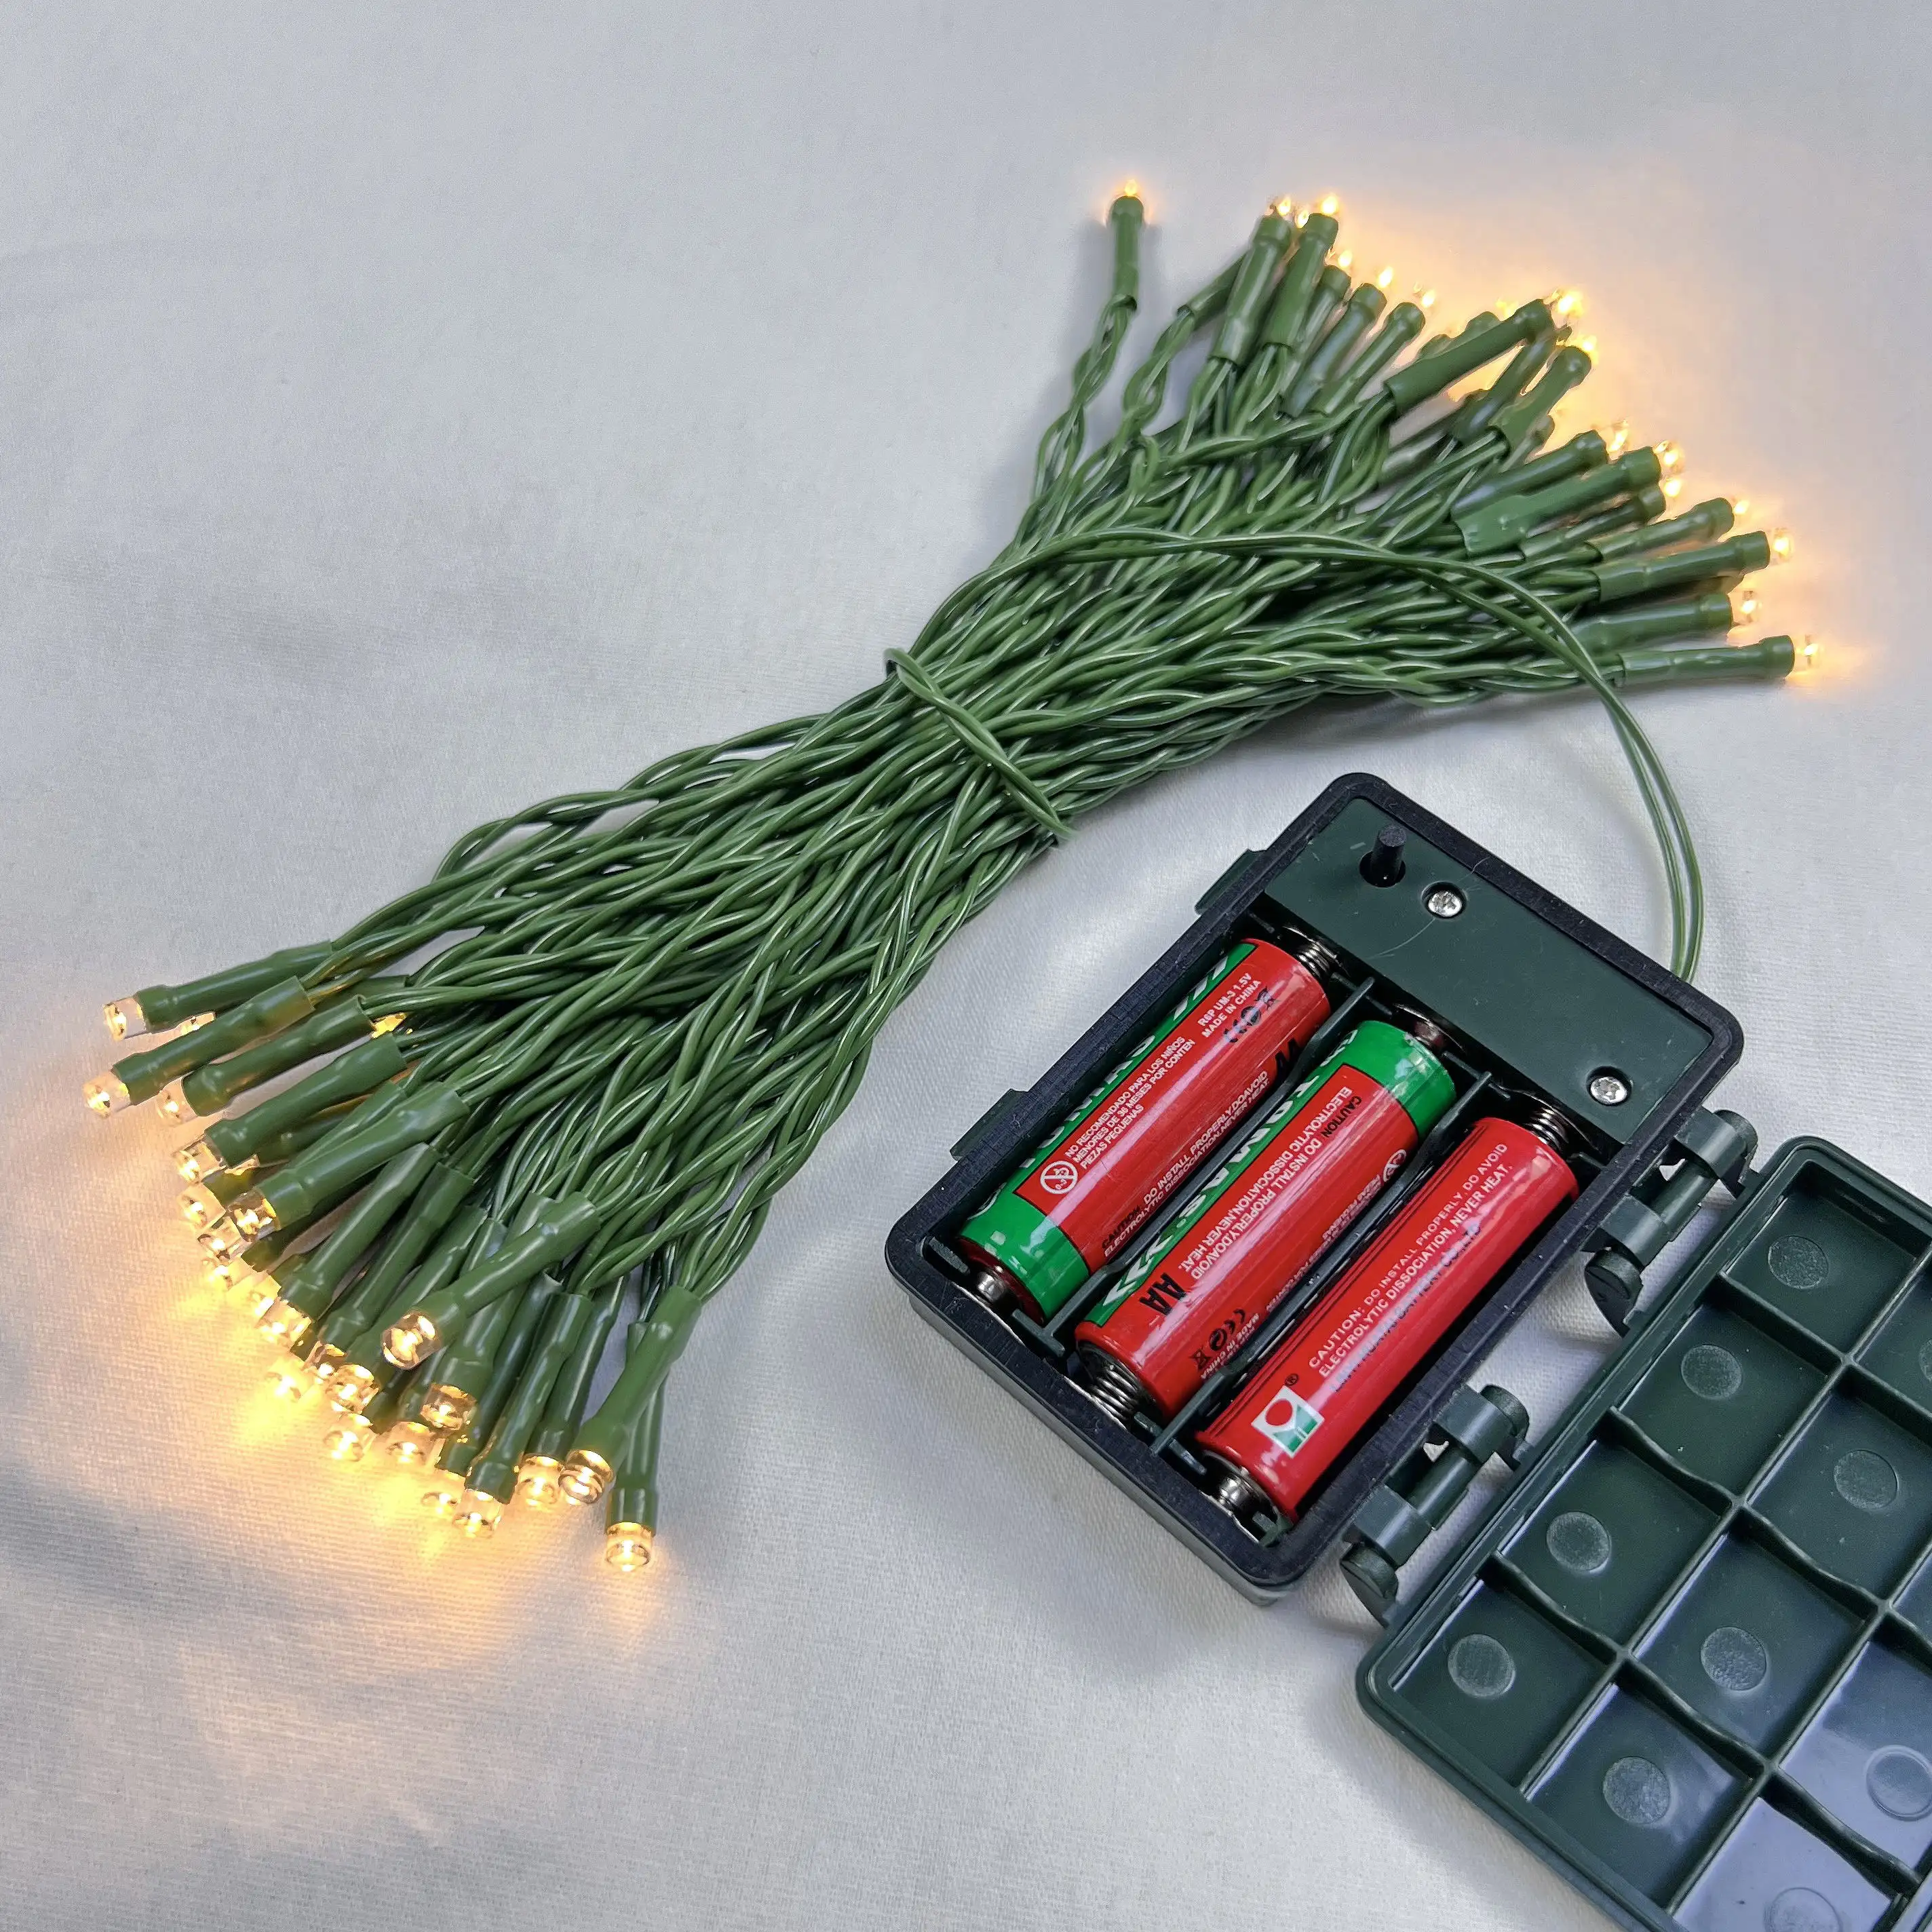 Dekorasi Natal LED, lampu dekorasi Natal tahan air dan api sol baterai hijau rumput taman rumput